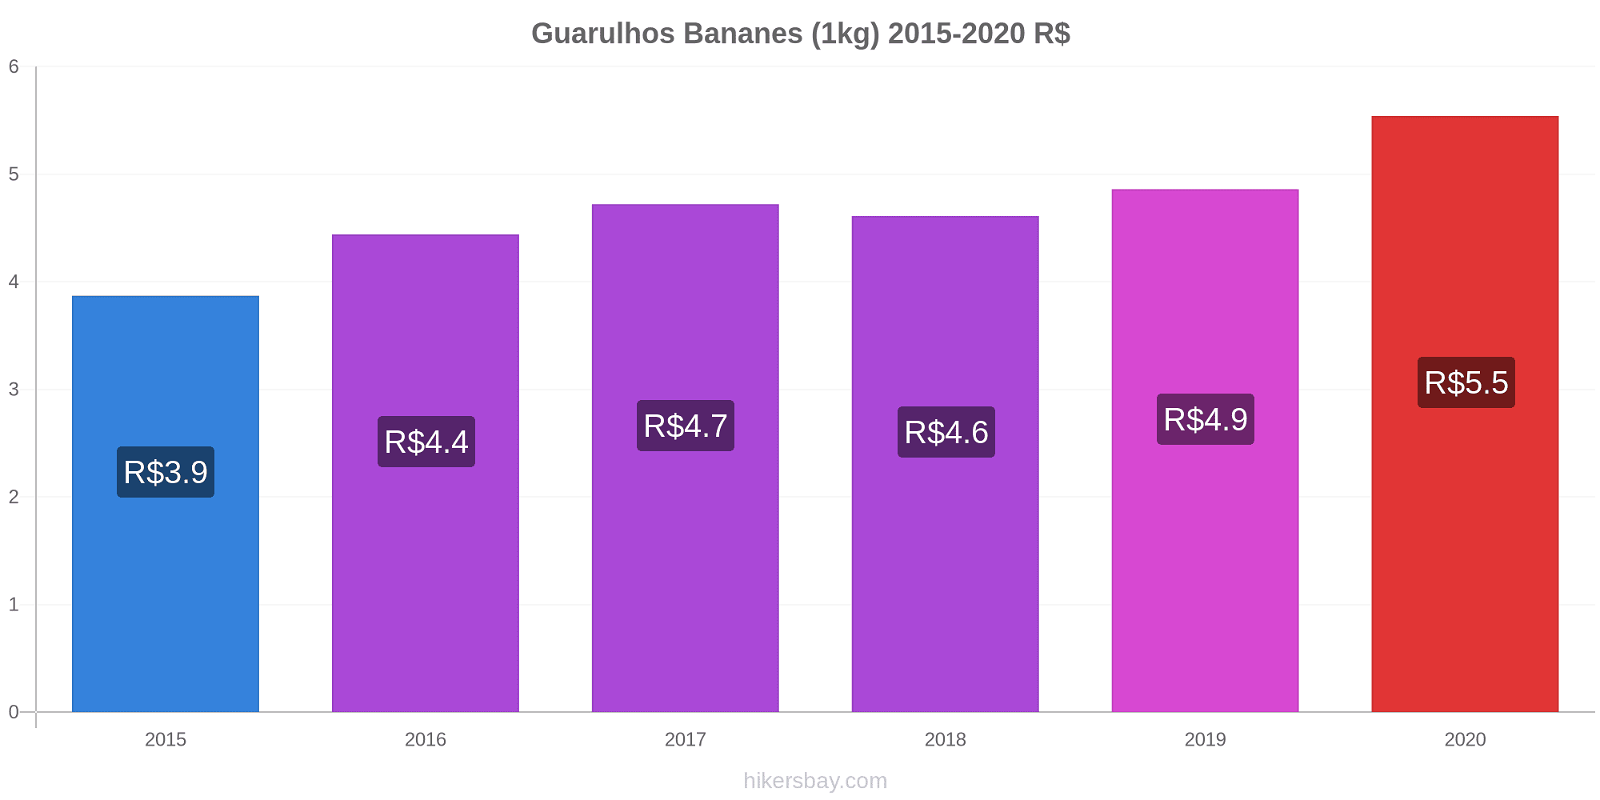 Guarulhos changements de prix Bananes (1kg) hikersbay.com